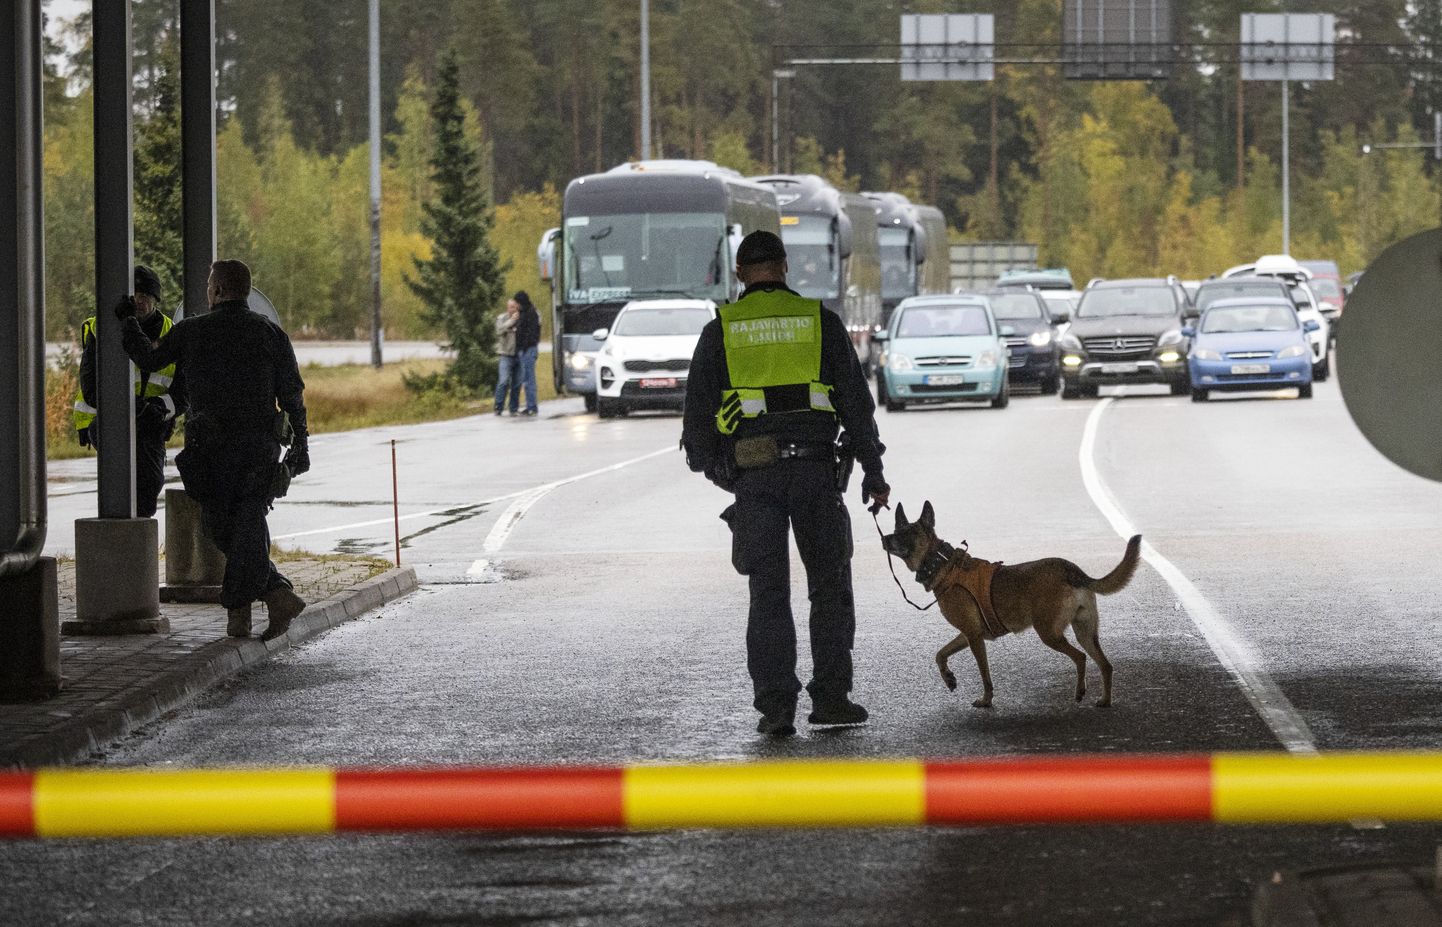 Soome piirivalvur koeraga Vaalimaa piiripunktis. Foto on tehtud 30. septembril 2022